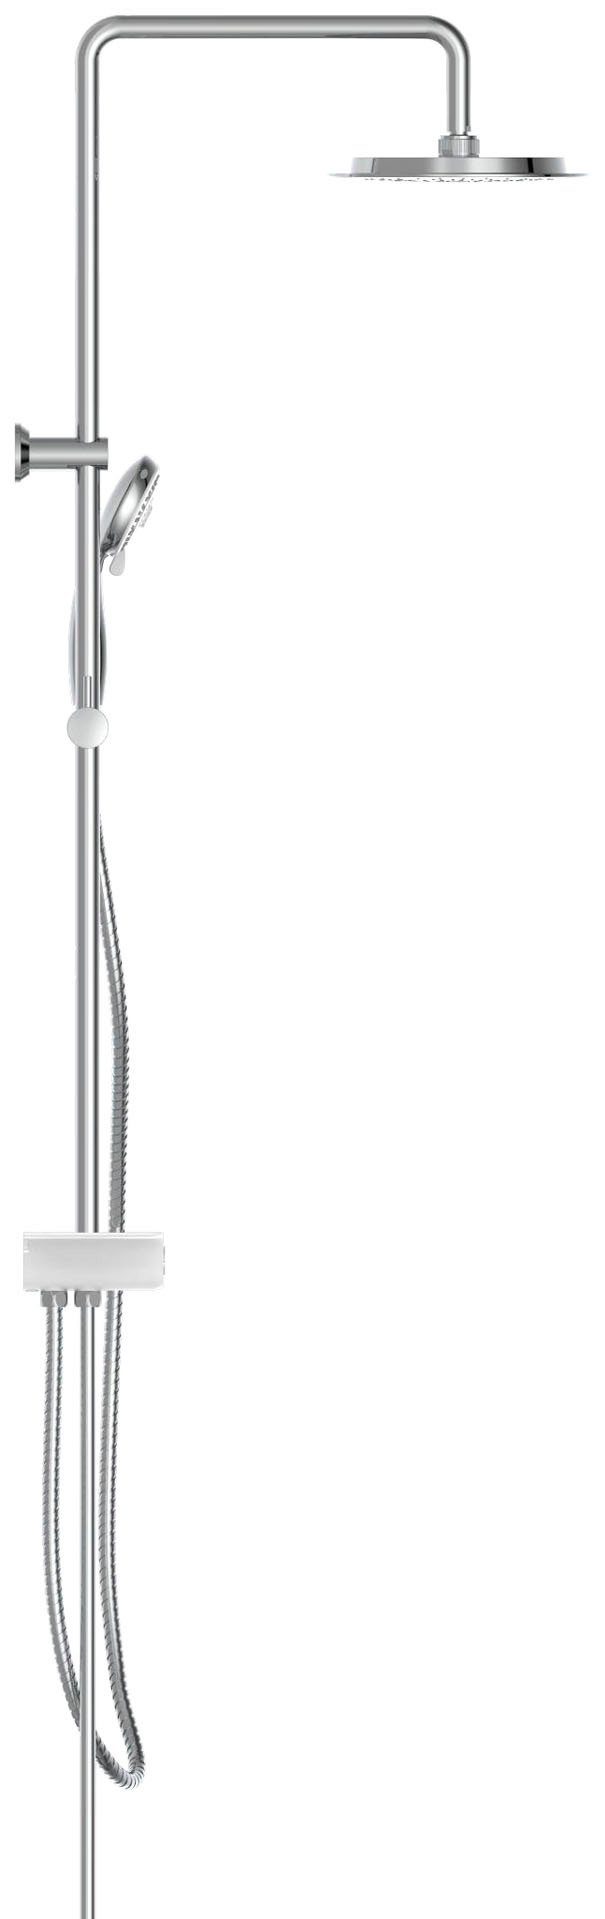 Aquastar, Ablage, ohne Höhe Schütte weiß-chromfarben Brausegarnitur mit Funktionen Duschsystem mit Armatur, Regendusche 5 cm, 113